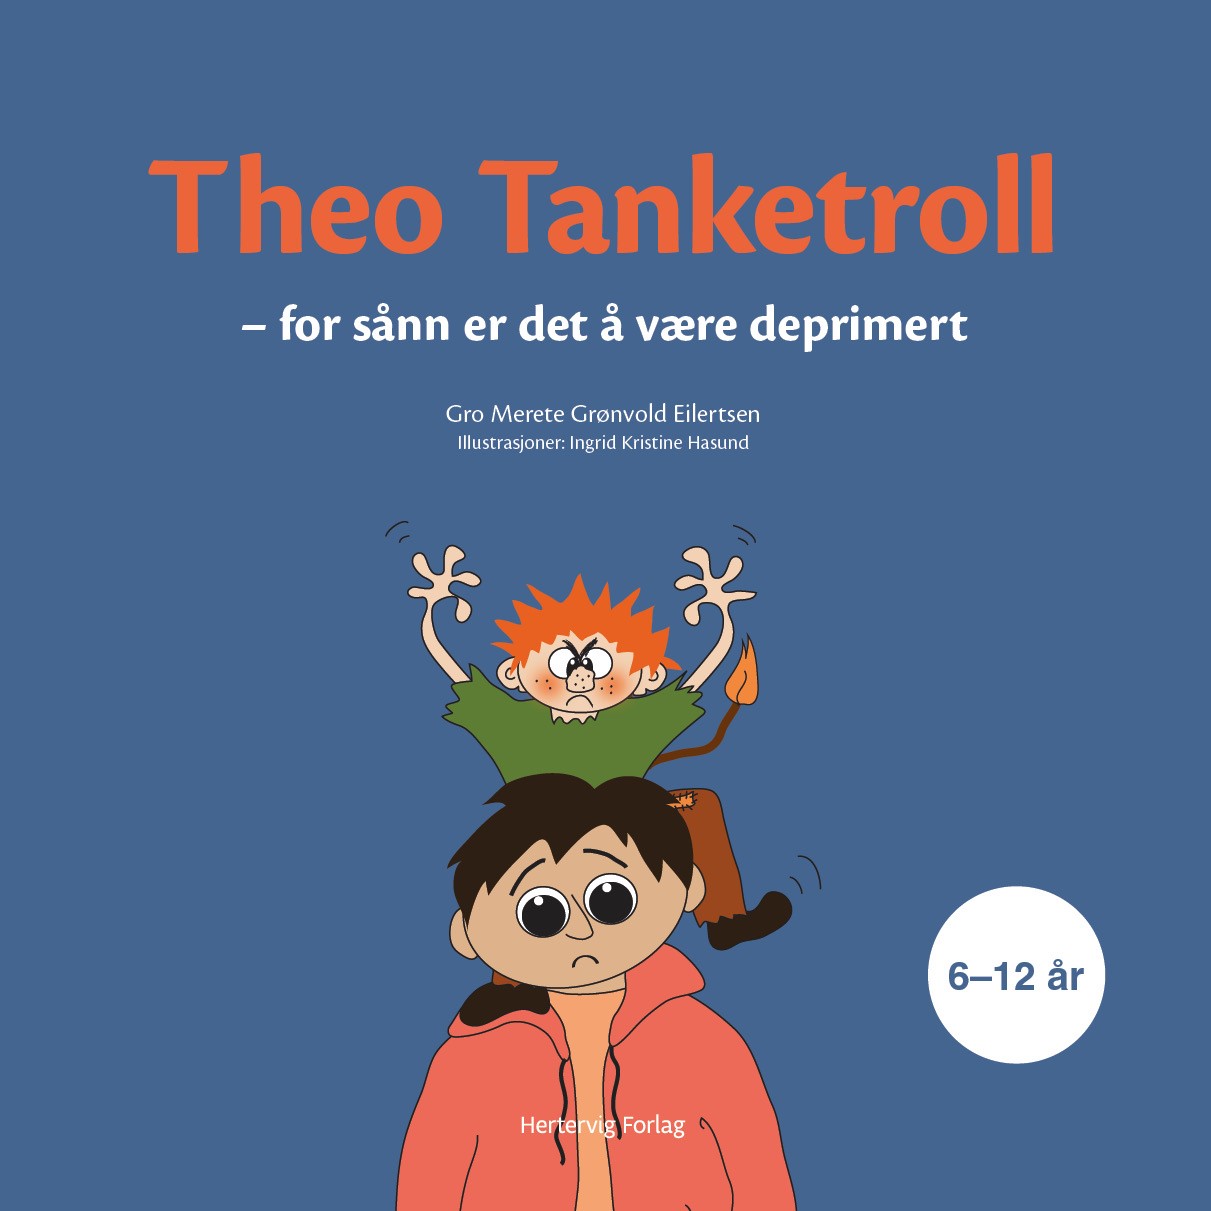 Se Theo Tanketroll - for sånn er det å være deprimert